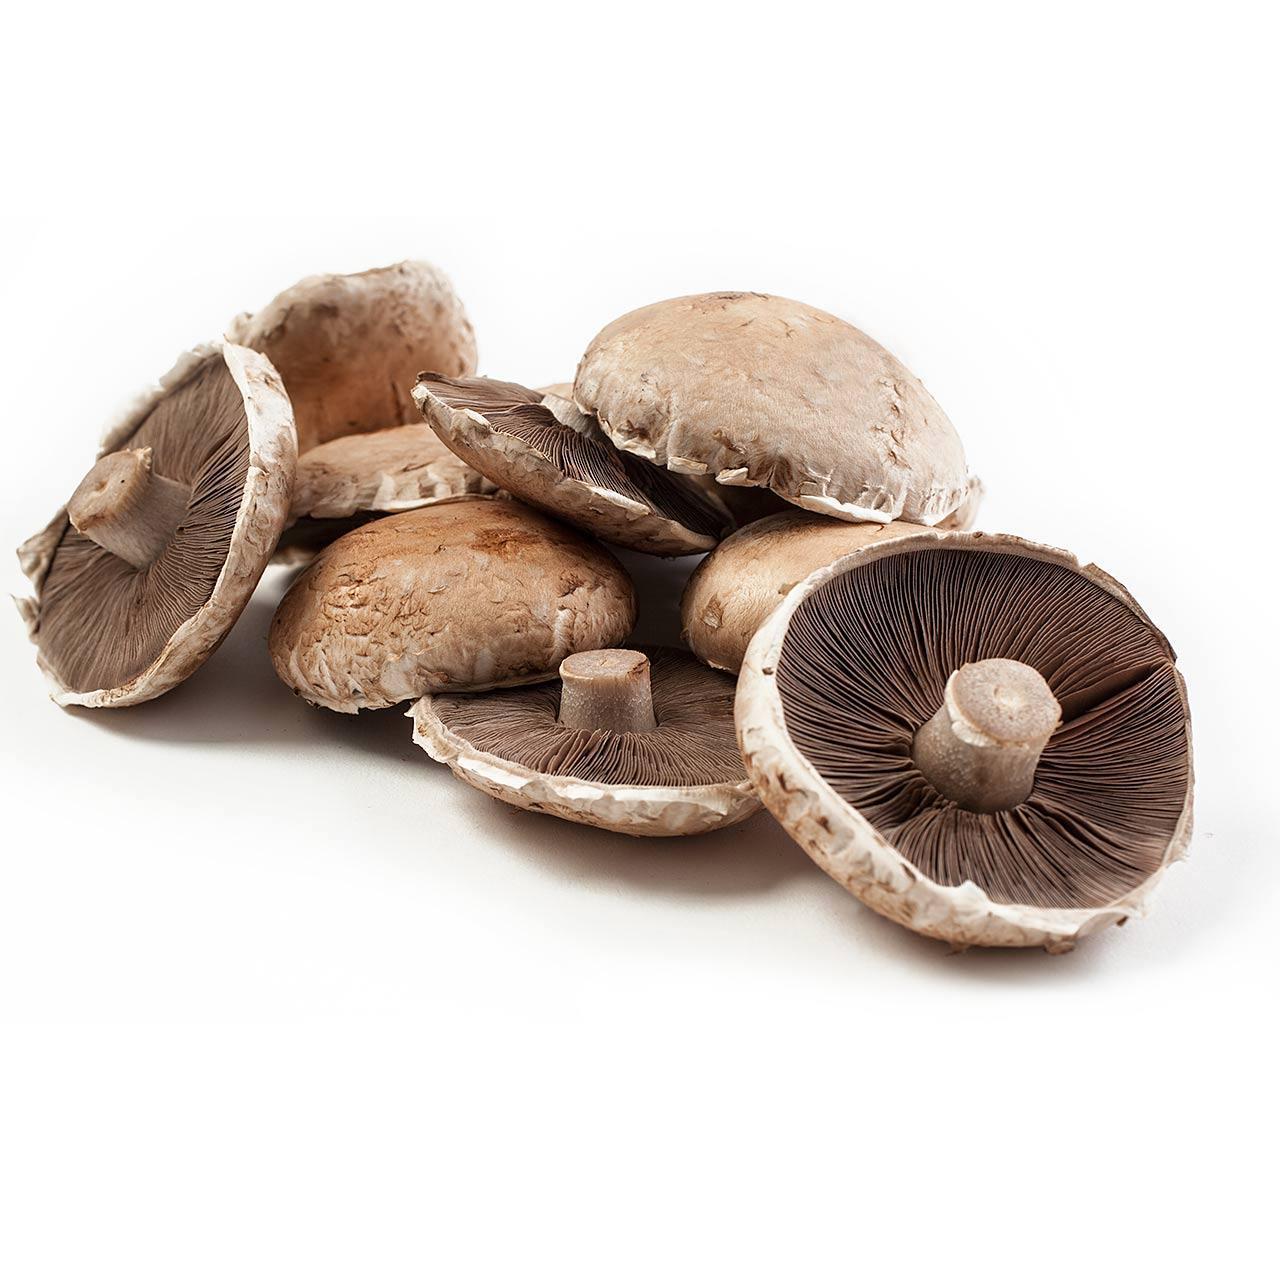 Ocado Organic Portabellini Mushrooms 200g